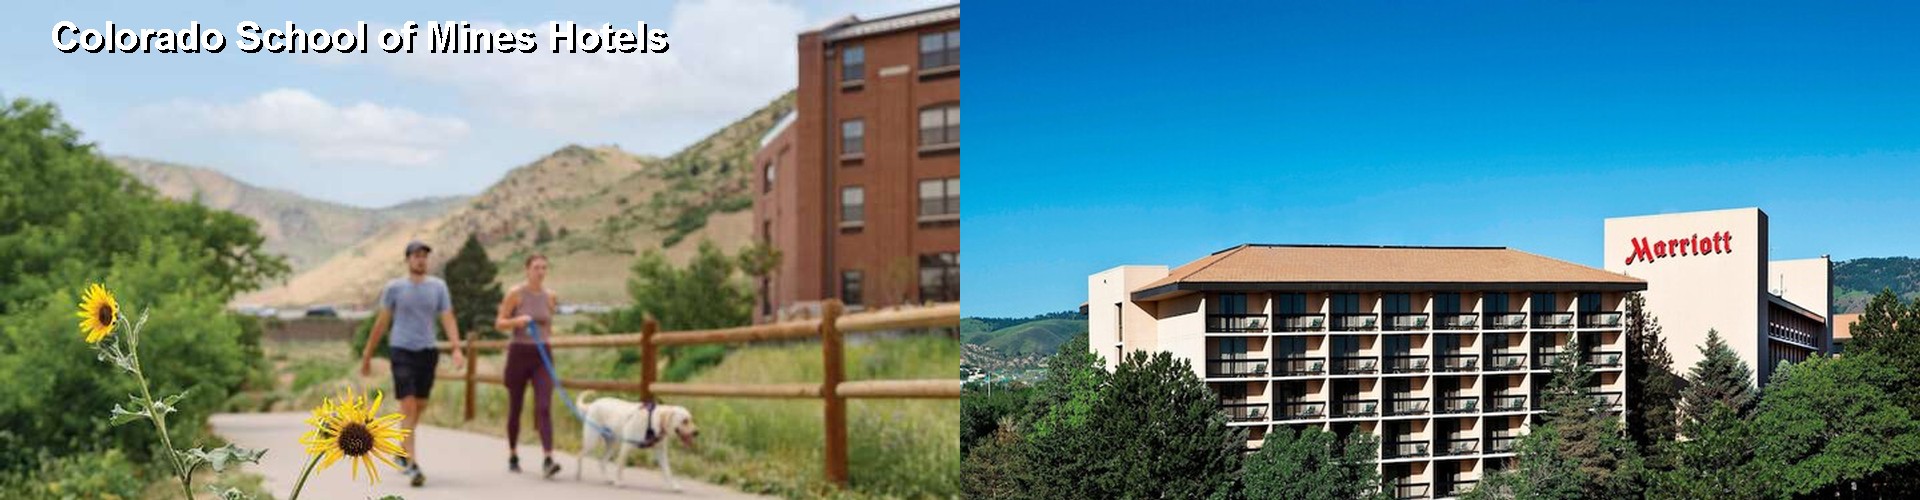 5 Best Hotels near Colorado School of Mines